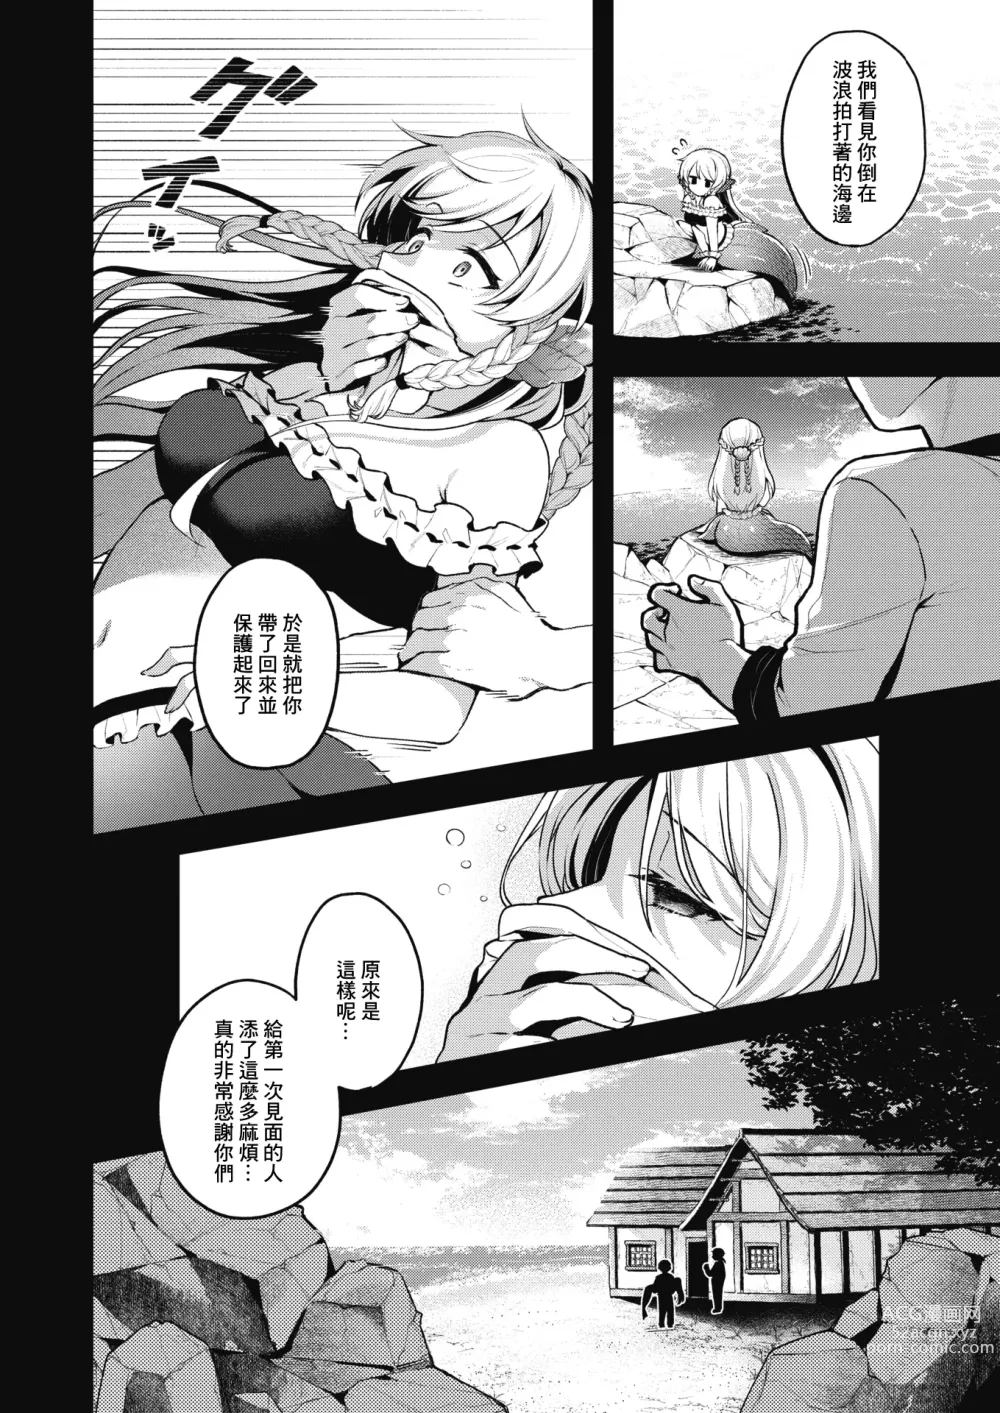 Page 5 of manga 雖然這裡沒有王子大人